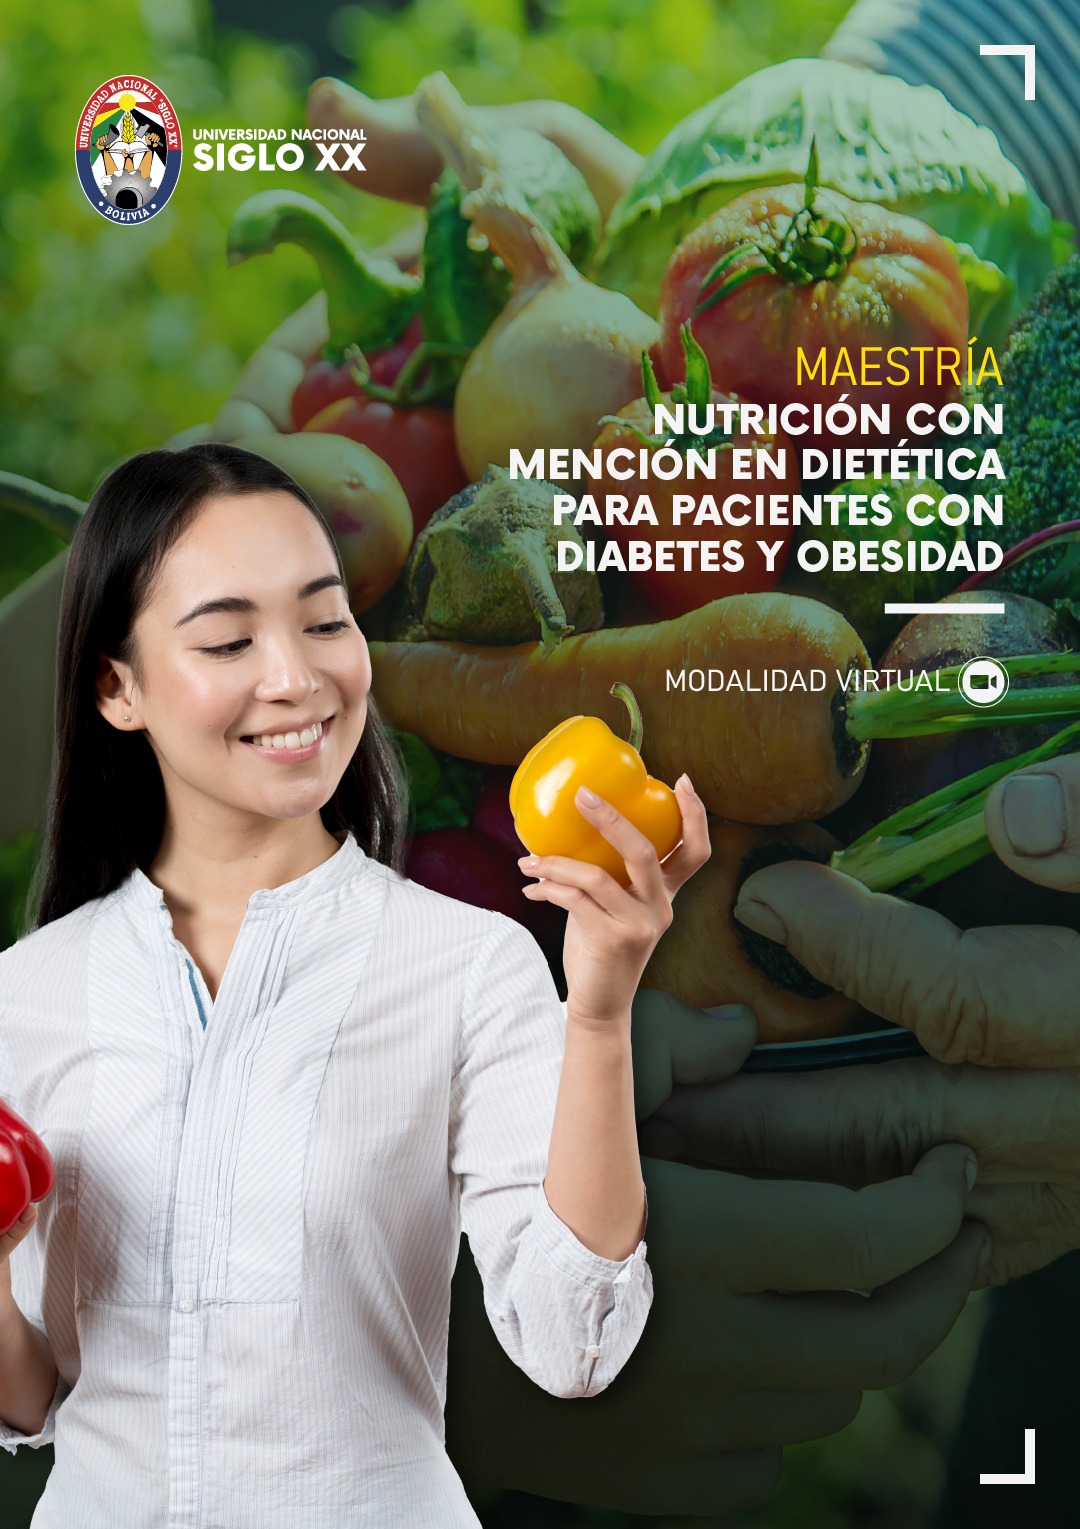 Maestría NUTRICIÓN CON MENCIÓN EN DIETÉTICA PARA PACIENTES CON DIABETES Y OBESIDAD